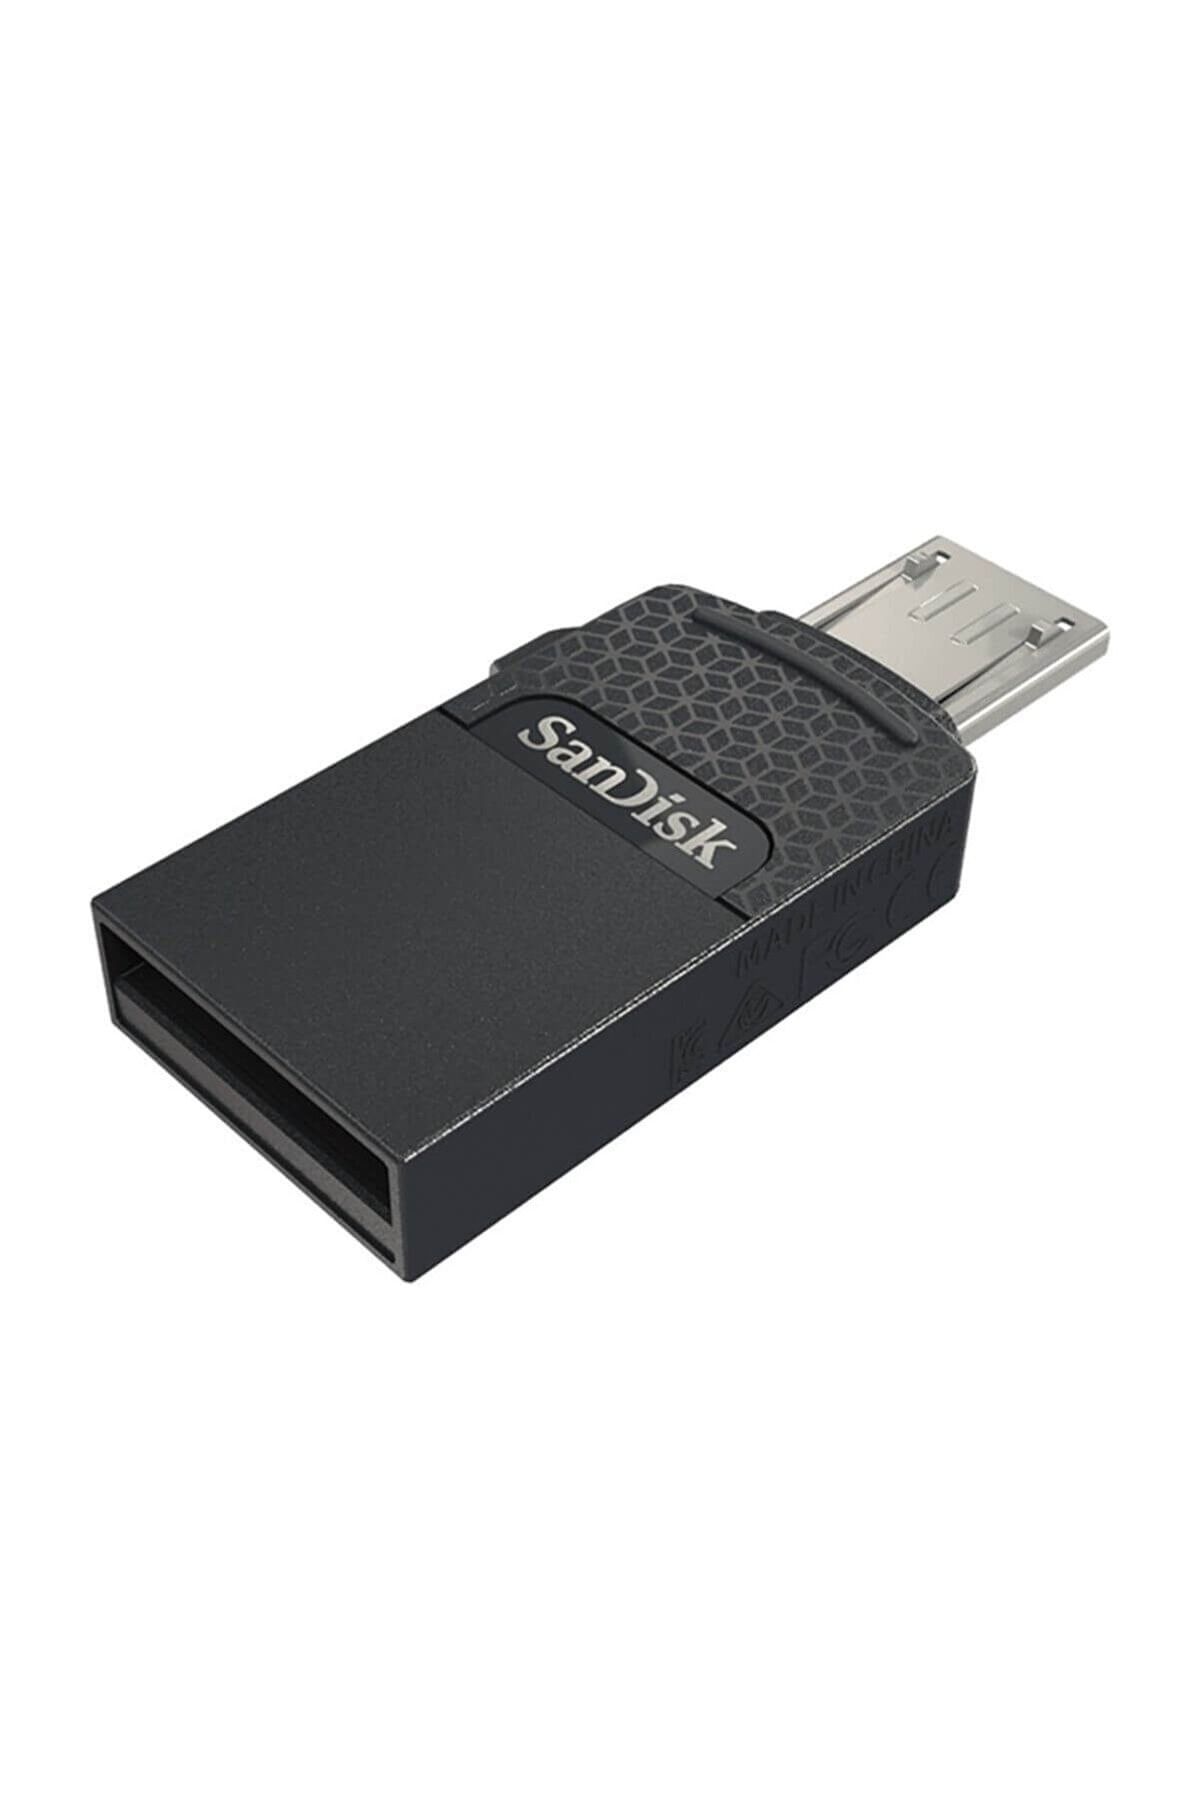 HKN Sandisk 16gb Usb Flash Bellek Dual Drive